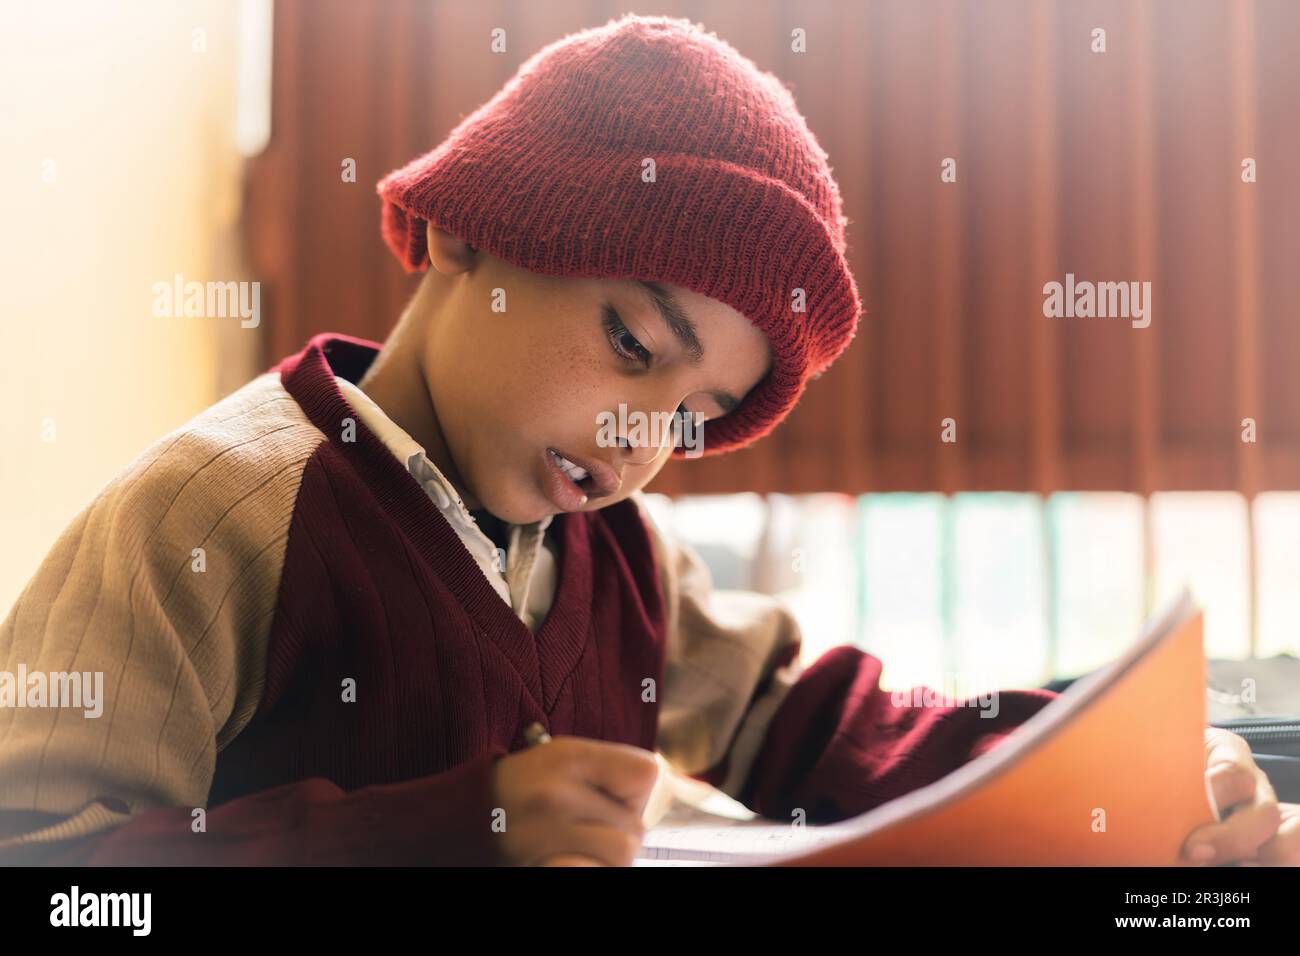 Ein indischer Junge, der im Klassenzimmer lernt, auf einem Notizblock schreibt und seine Schuluniform trägt, Bildung und wieder-zur-Schule-Konzept. Stockfoto